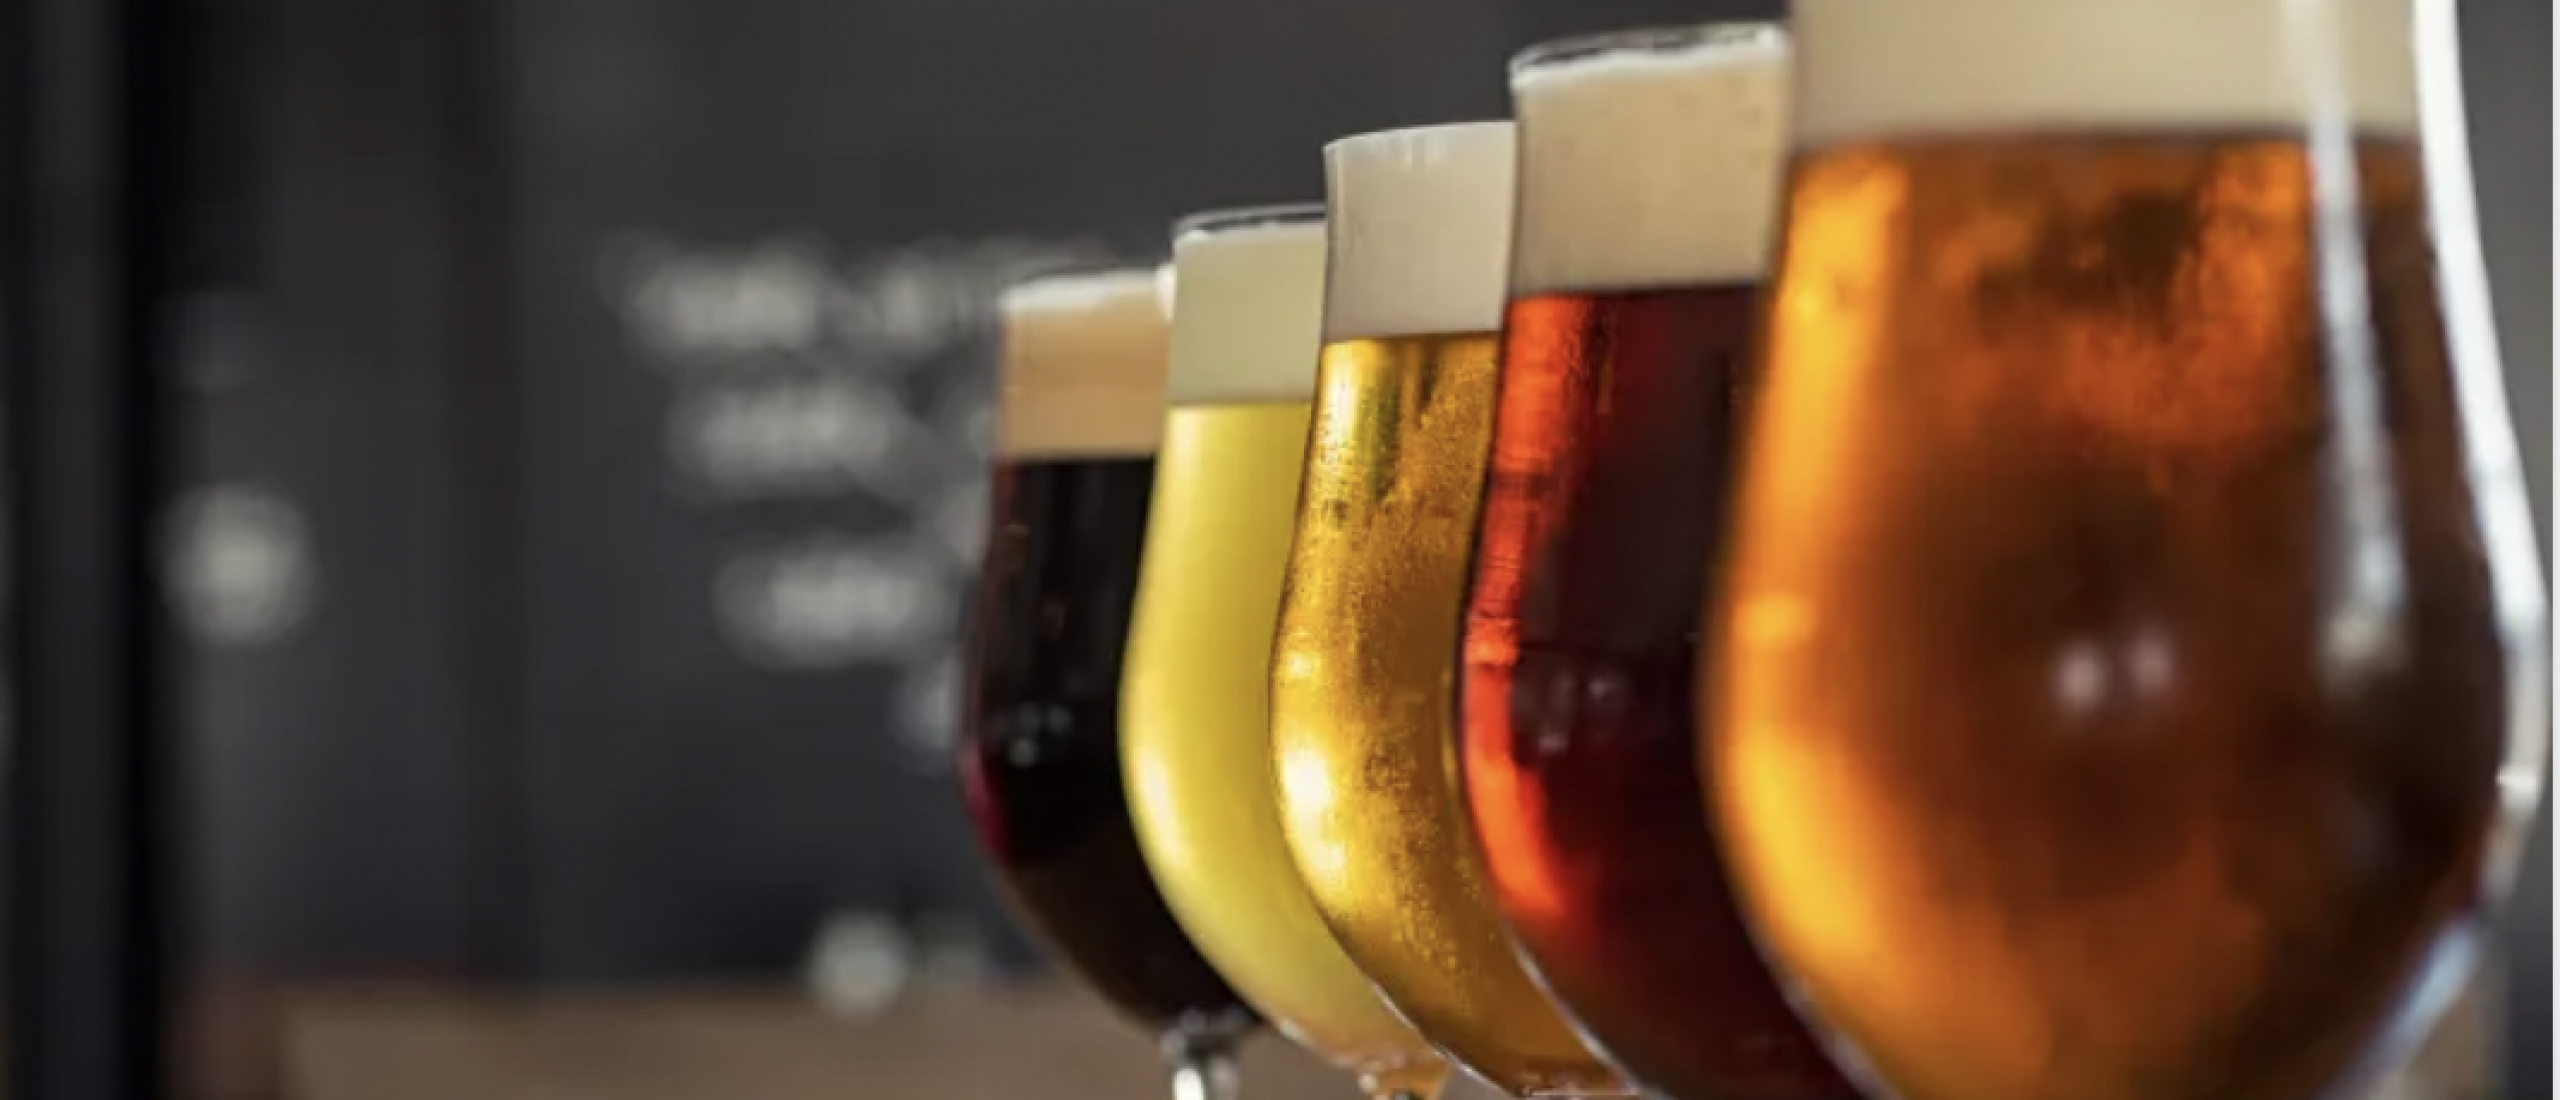 Bierproevereisje Nederland: de leukste bierproeverij voor thuis met je partner